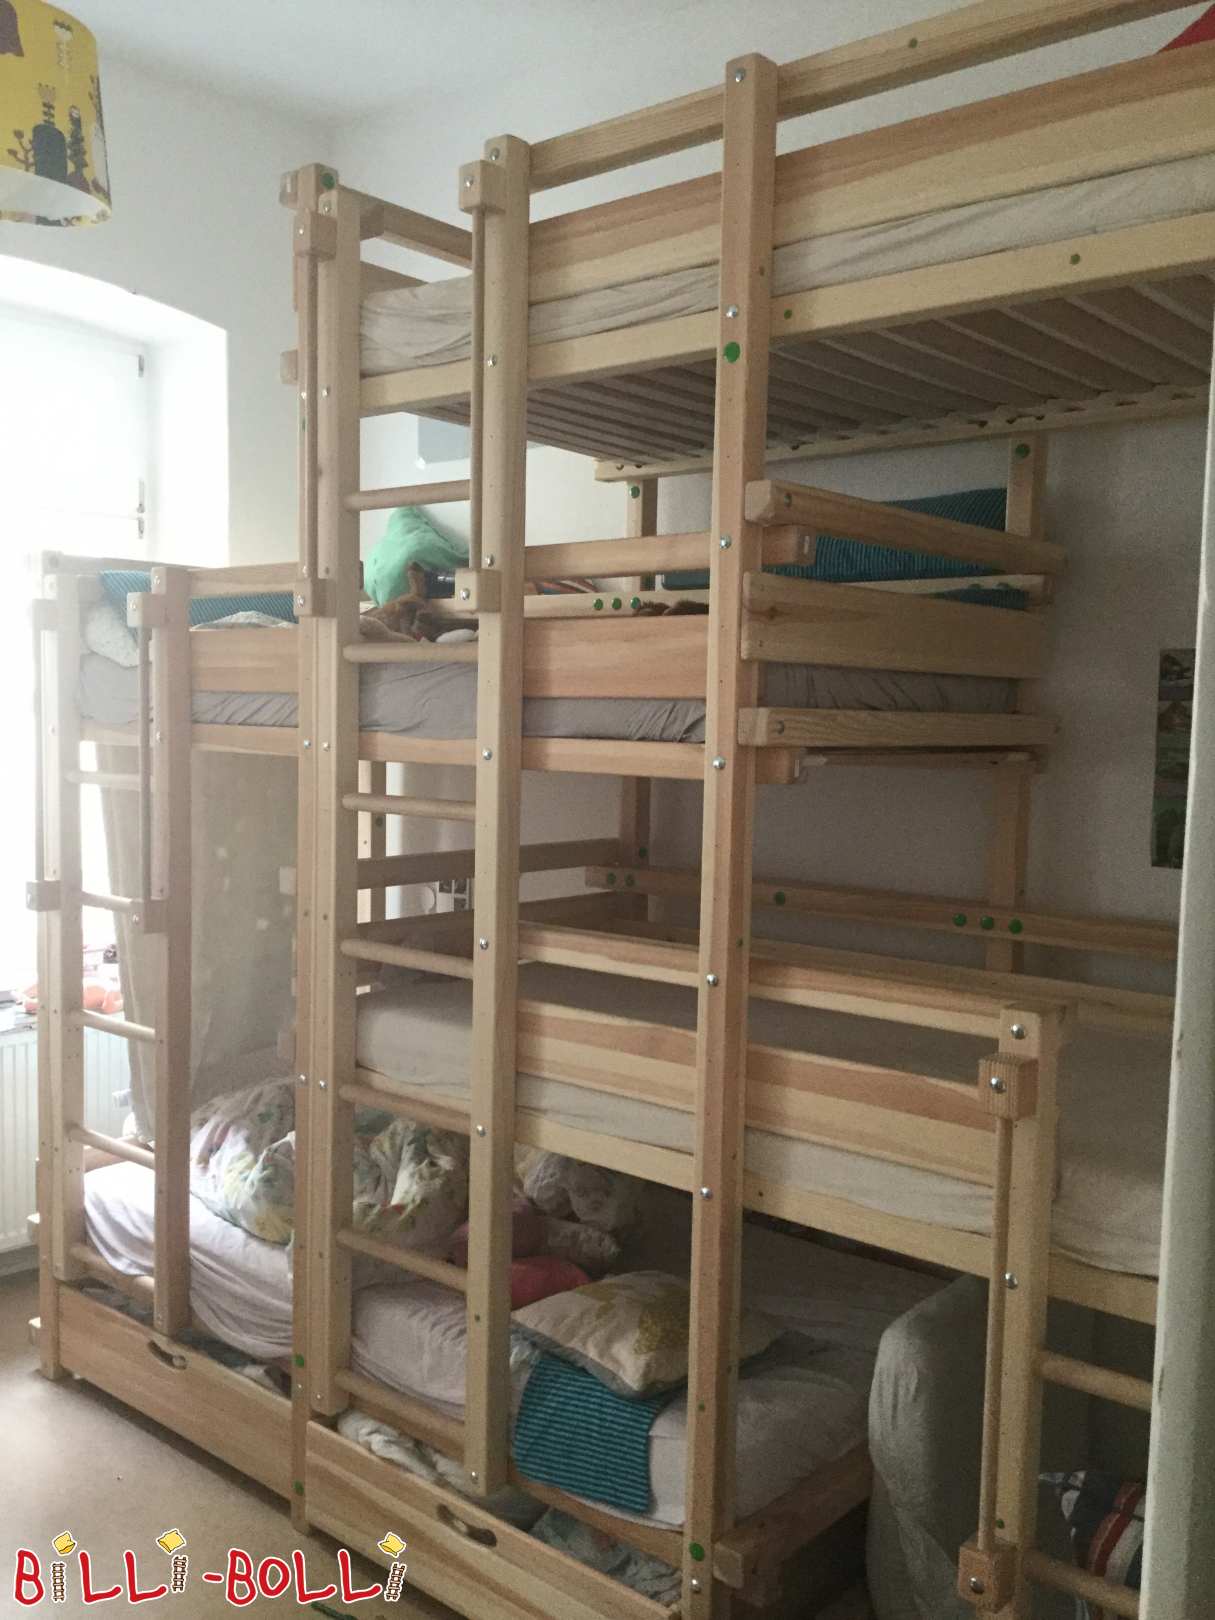 4 çocuk için dört katlı yatak başı ofseti (90x200cm) (Kategori: Kullanılan çocuk mobilyaları)